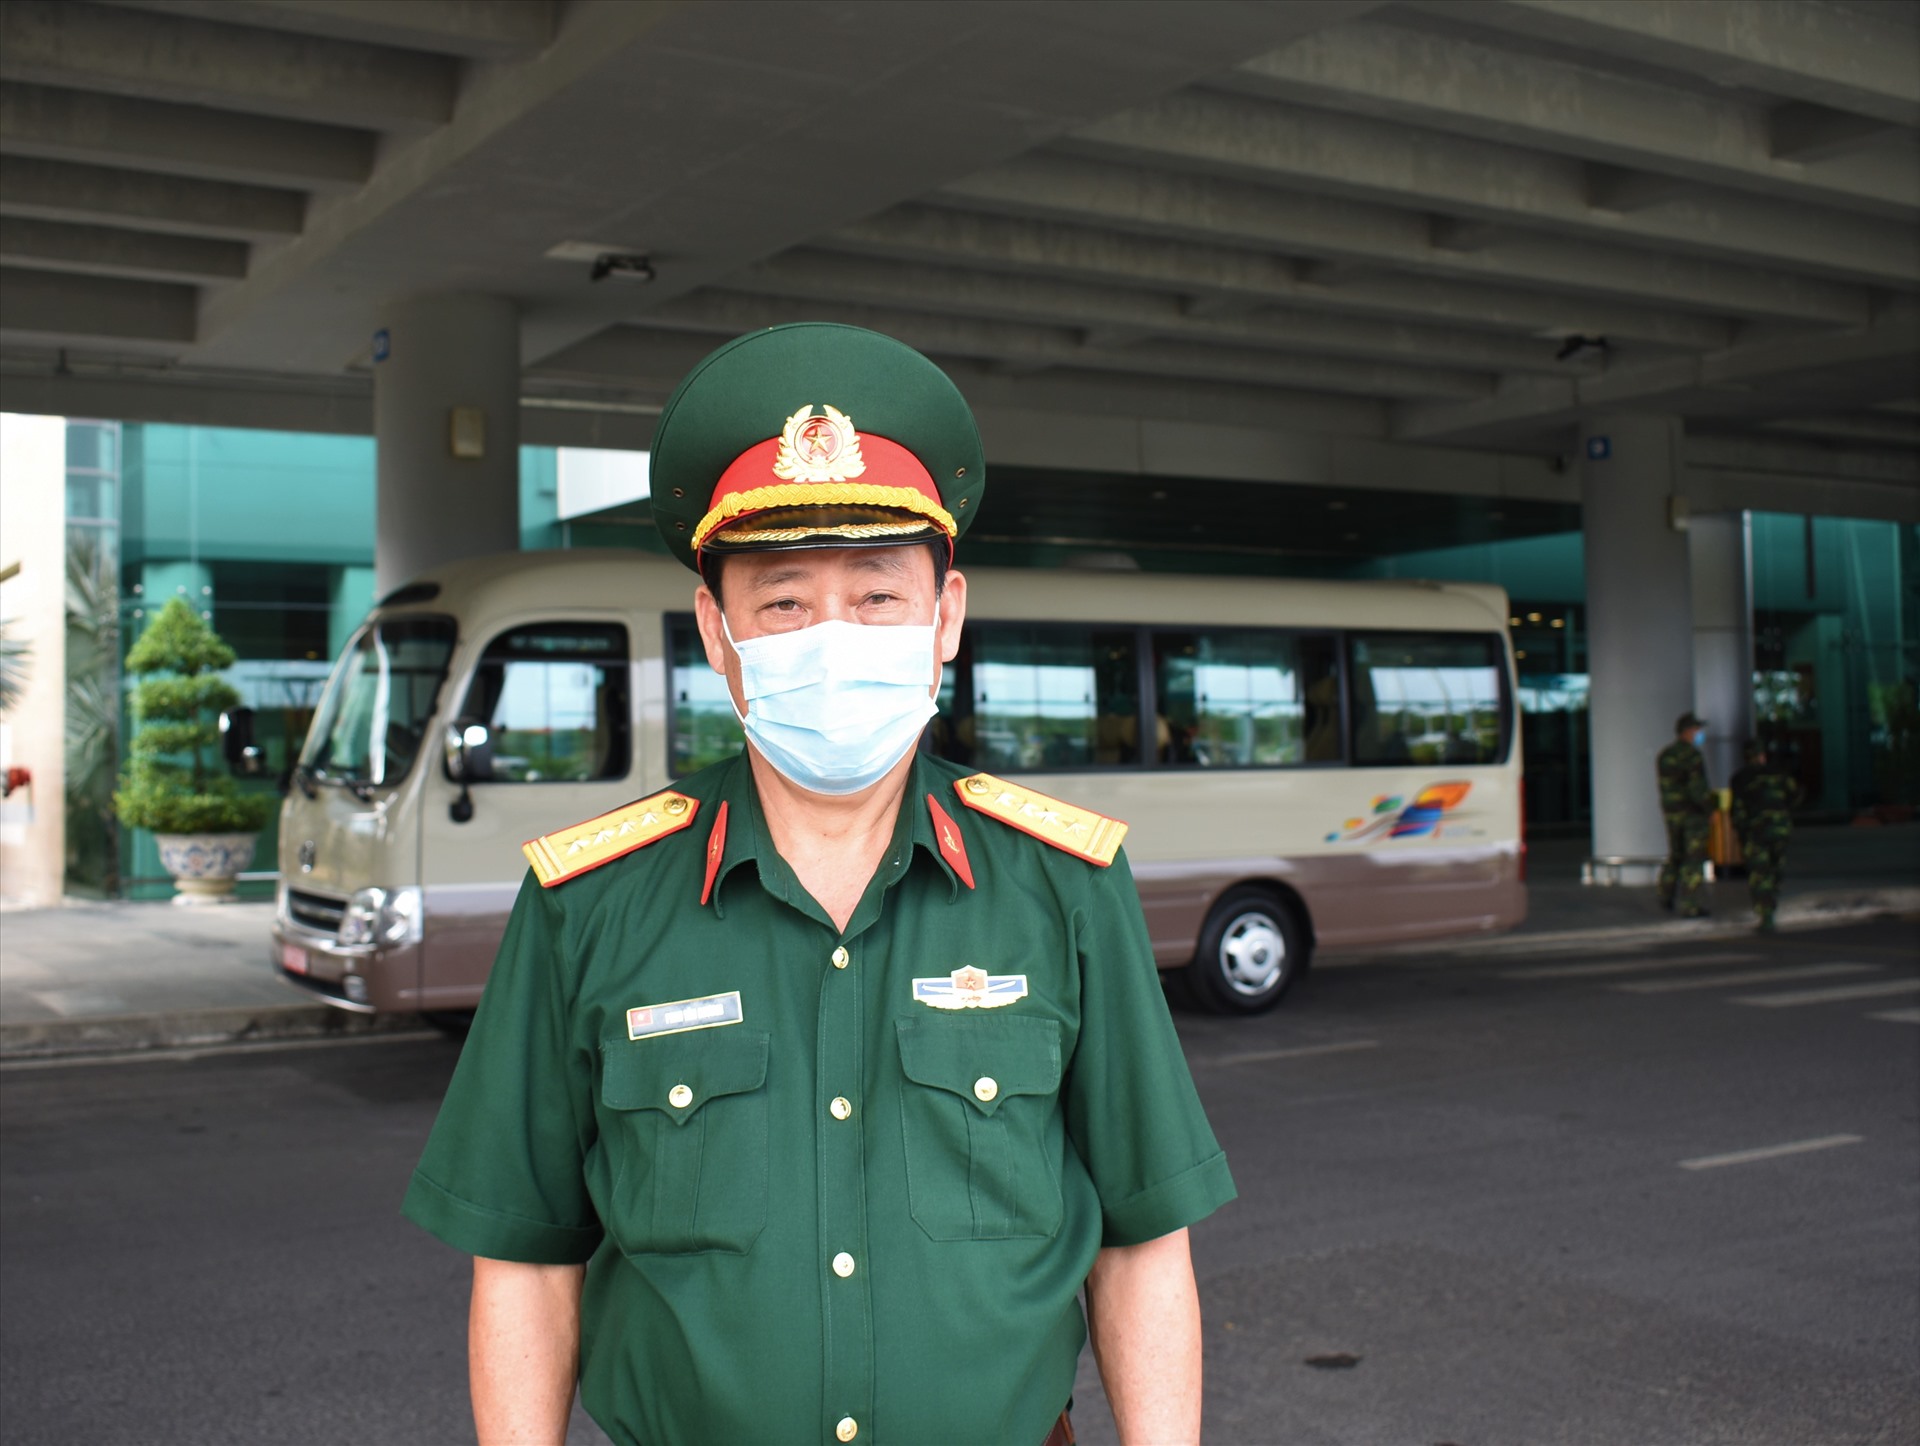 Đại tá Phan Văn Chương - Cục phó Cục hậu cần Bộ tư lệnh Quân khu 9 chỉ huy tại sân bay Cần Thơ đưa đón hành khách từ Hàn Quốc về Cần Thơ đến khu cách ly. Ảnh: Thành Nhân